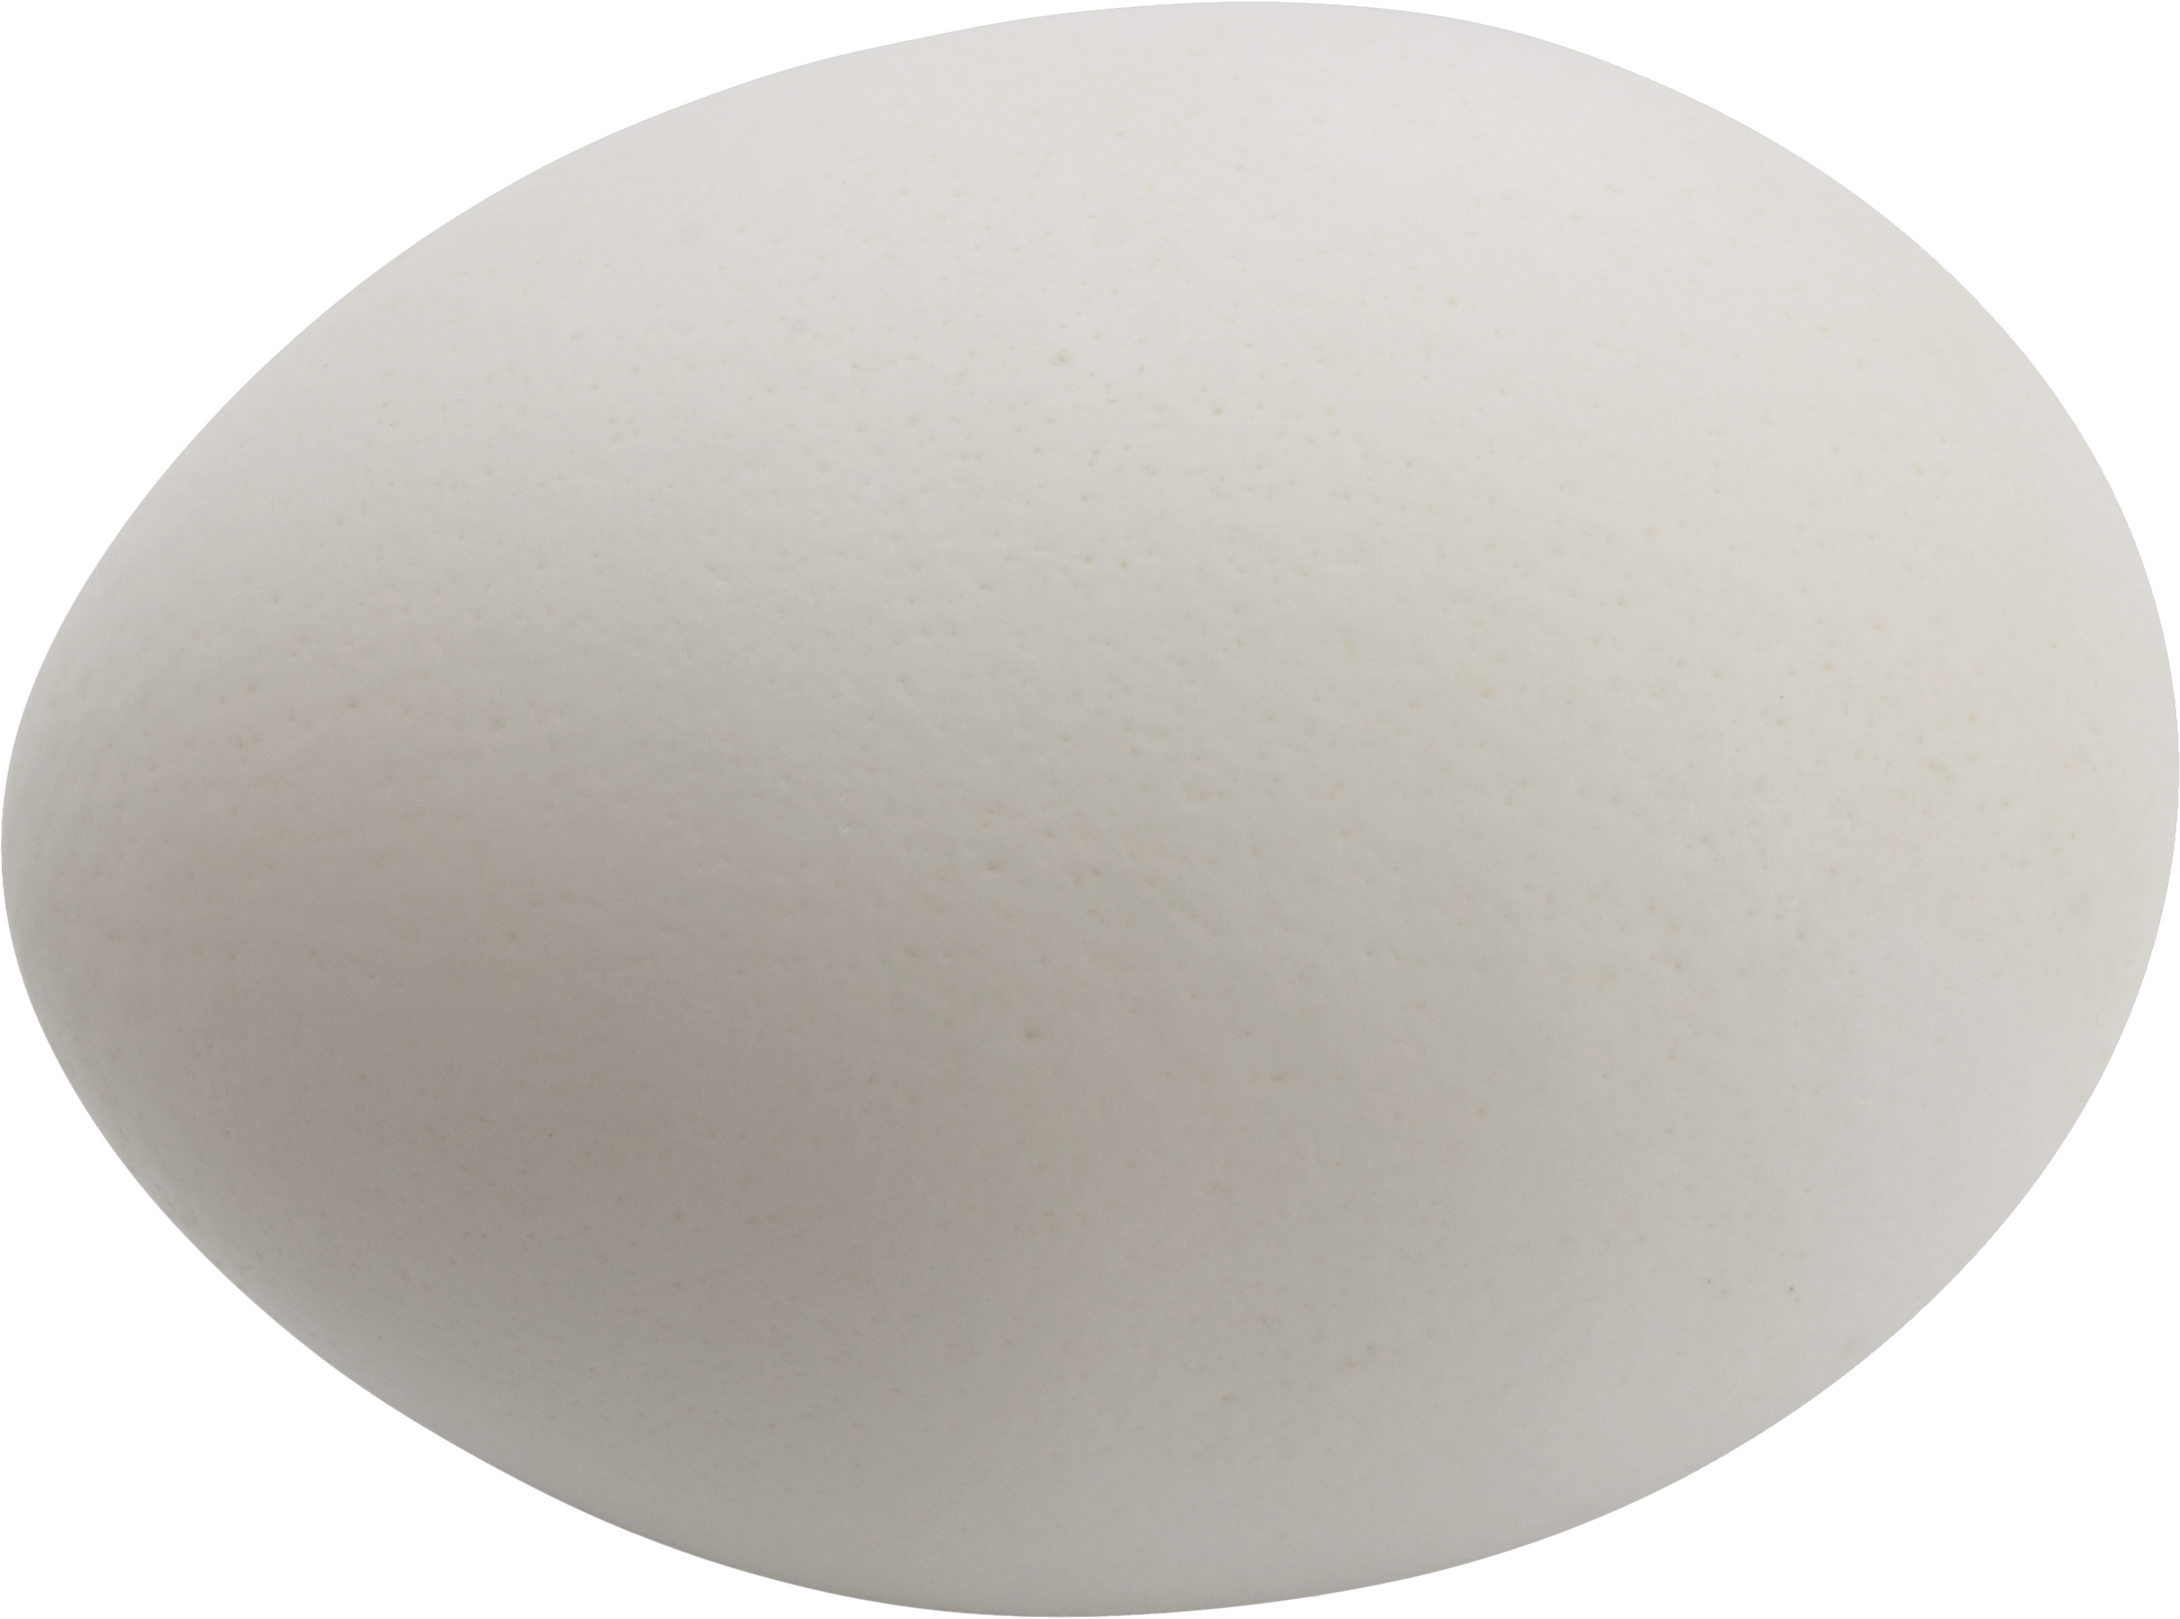 卵